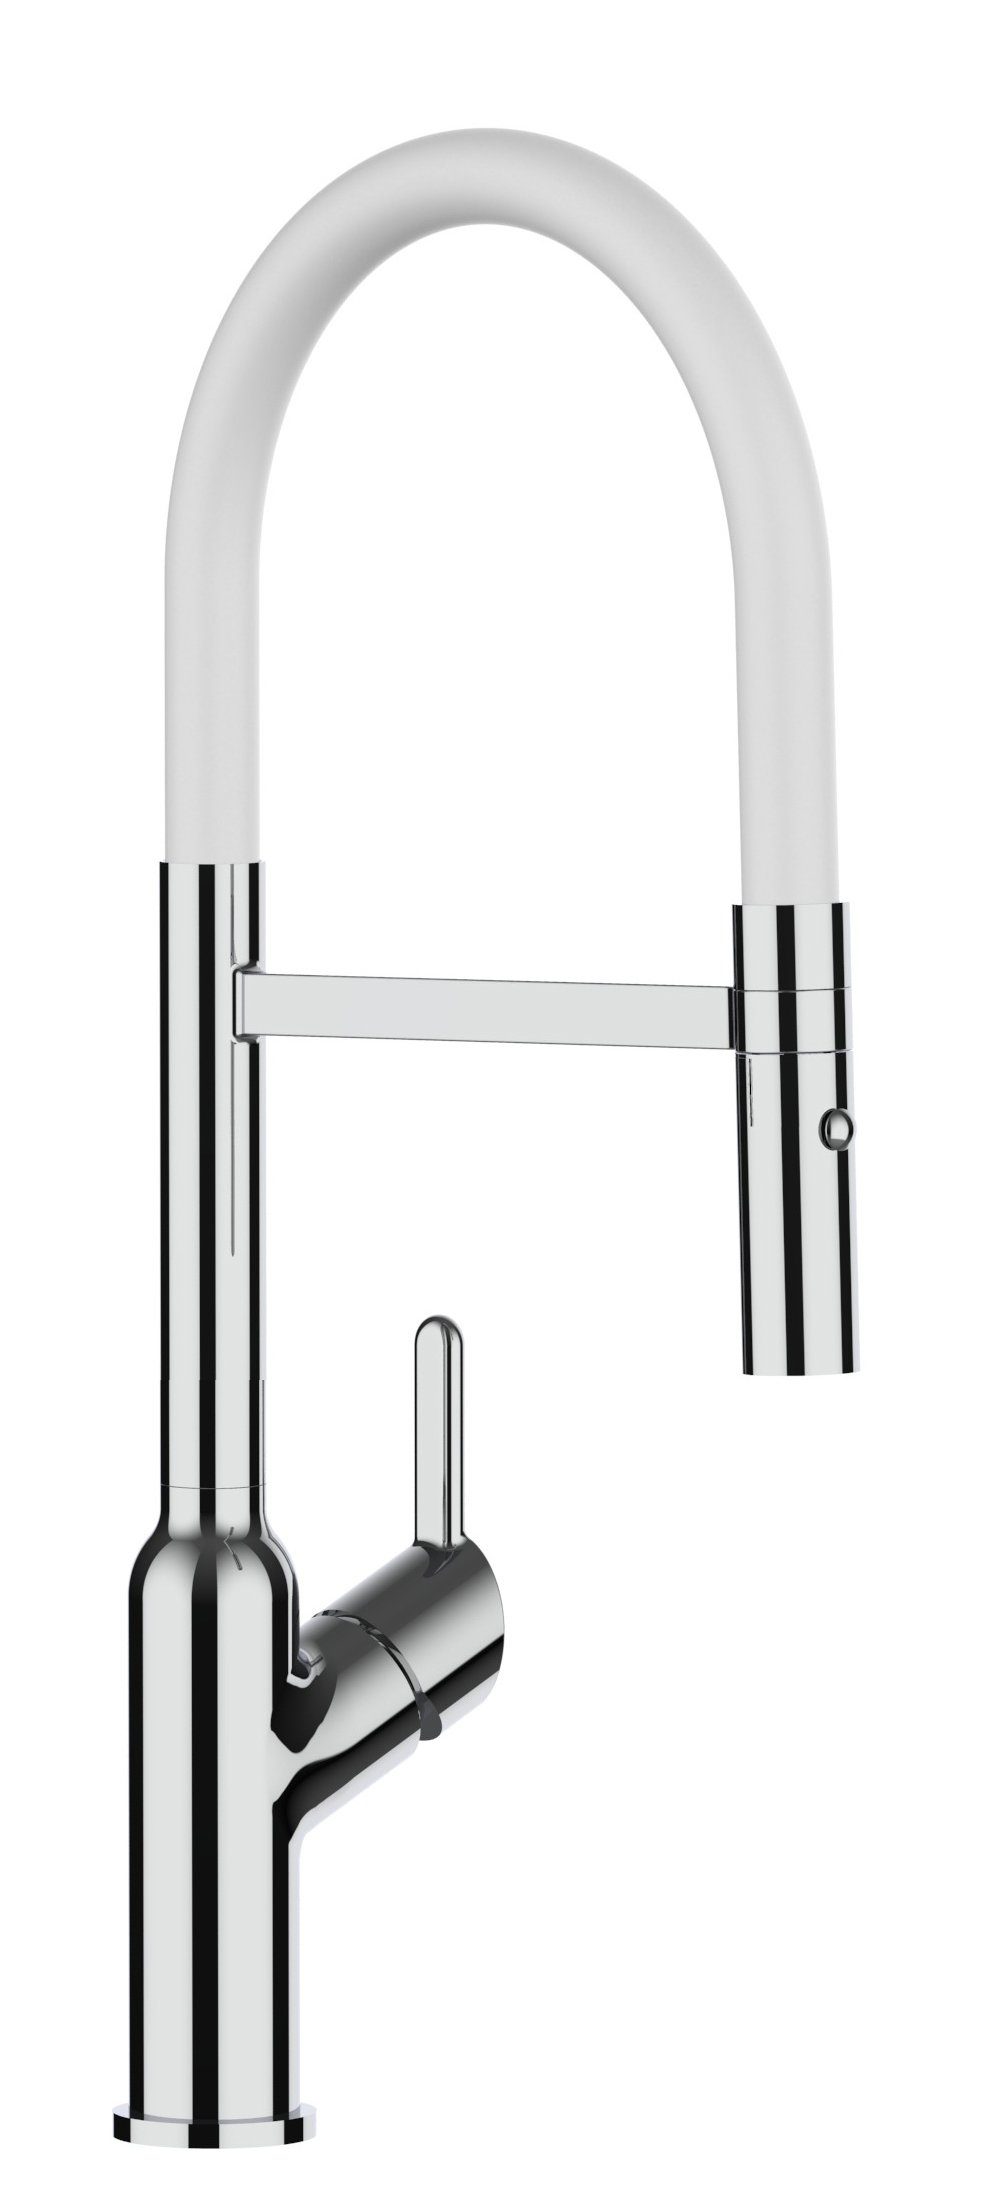 2Strahl Küchenarmatur 360° Weiß strahl Auslauf und mit Wasserhahn chrom Brause Hochdruck, Verchromung, Küchenarmatur Chrom abnehmbarer mit 2 Brause Hochwertige Design / VIZIO schwenkbarem